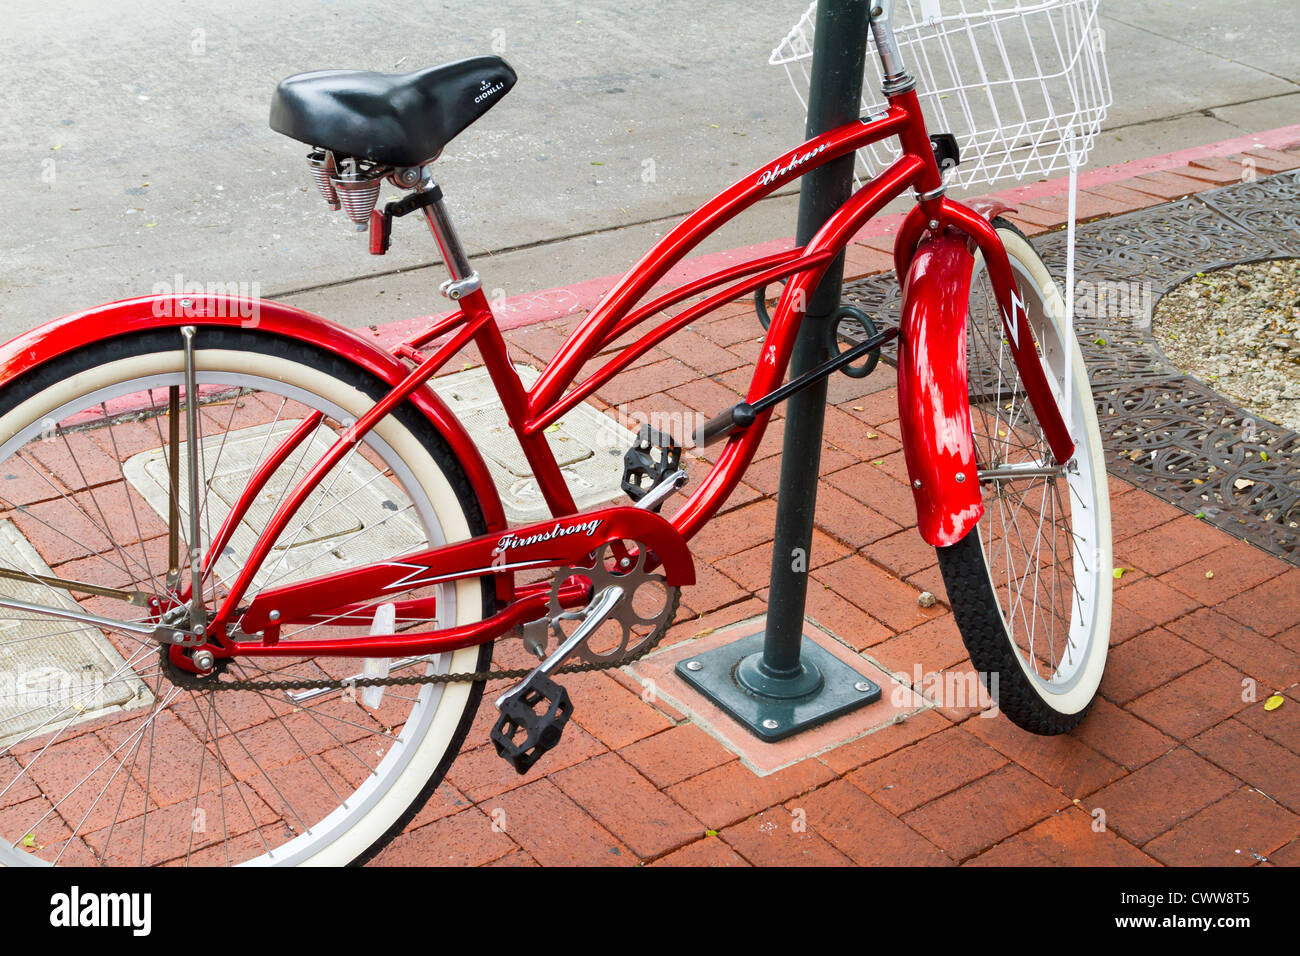 Bicicletta rossa immagini e fotografie stock ad alta risoluzione - Alamy